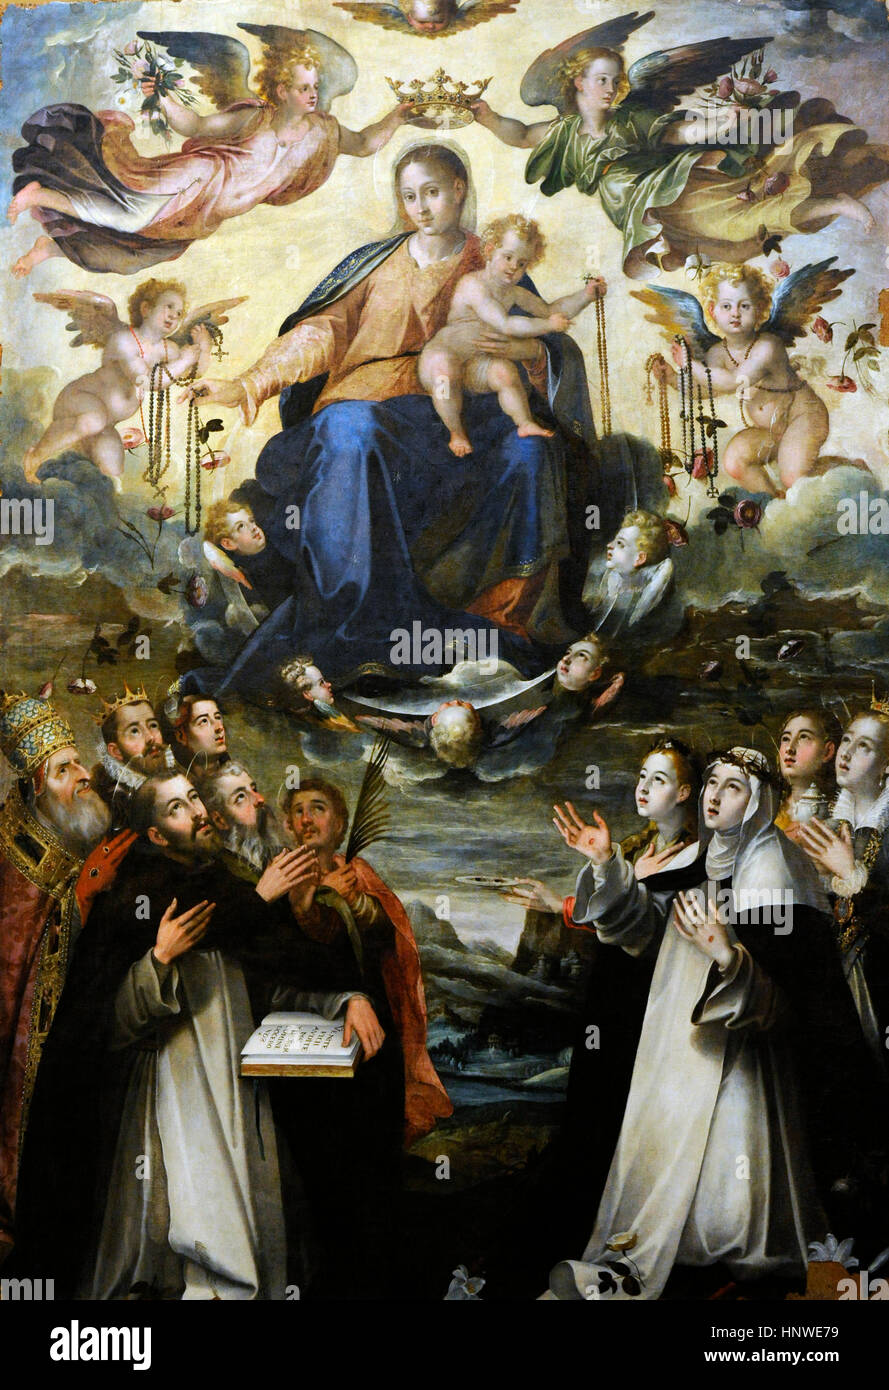 Aert Mijtens (1541-1602). Peintre flamand. Renaissance. Vierge Marie du Rosaire, 1582-84. Huile sur table. Musée de Capodimonte, Naples, Italie. Banque D'Images